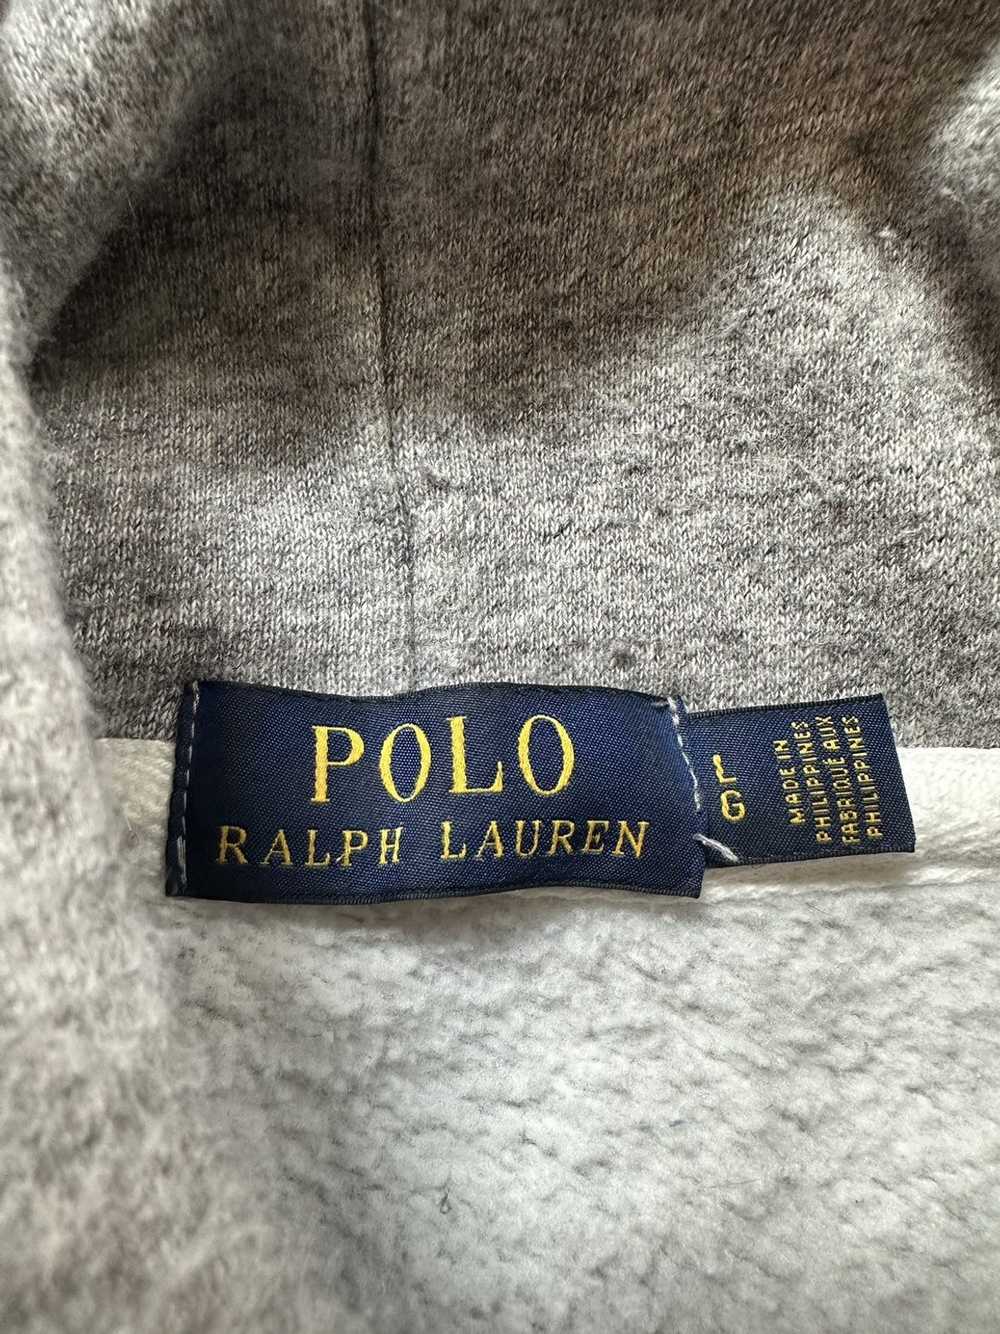 Polo Ralph Lauren Polo Ralph Lauren Size S Vintag… - image 6